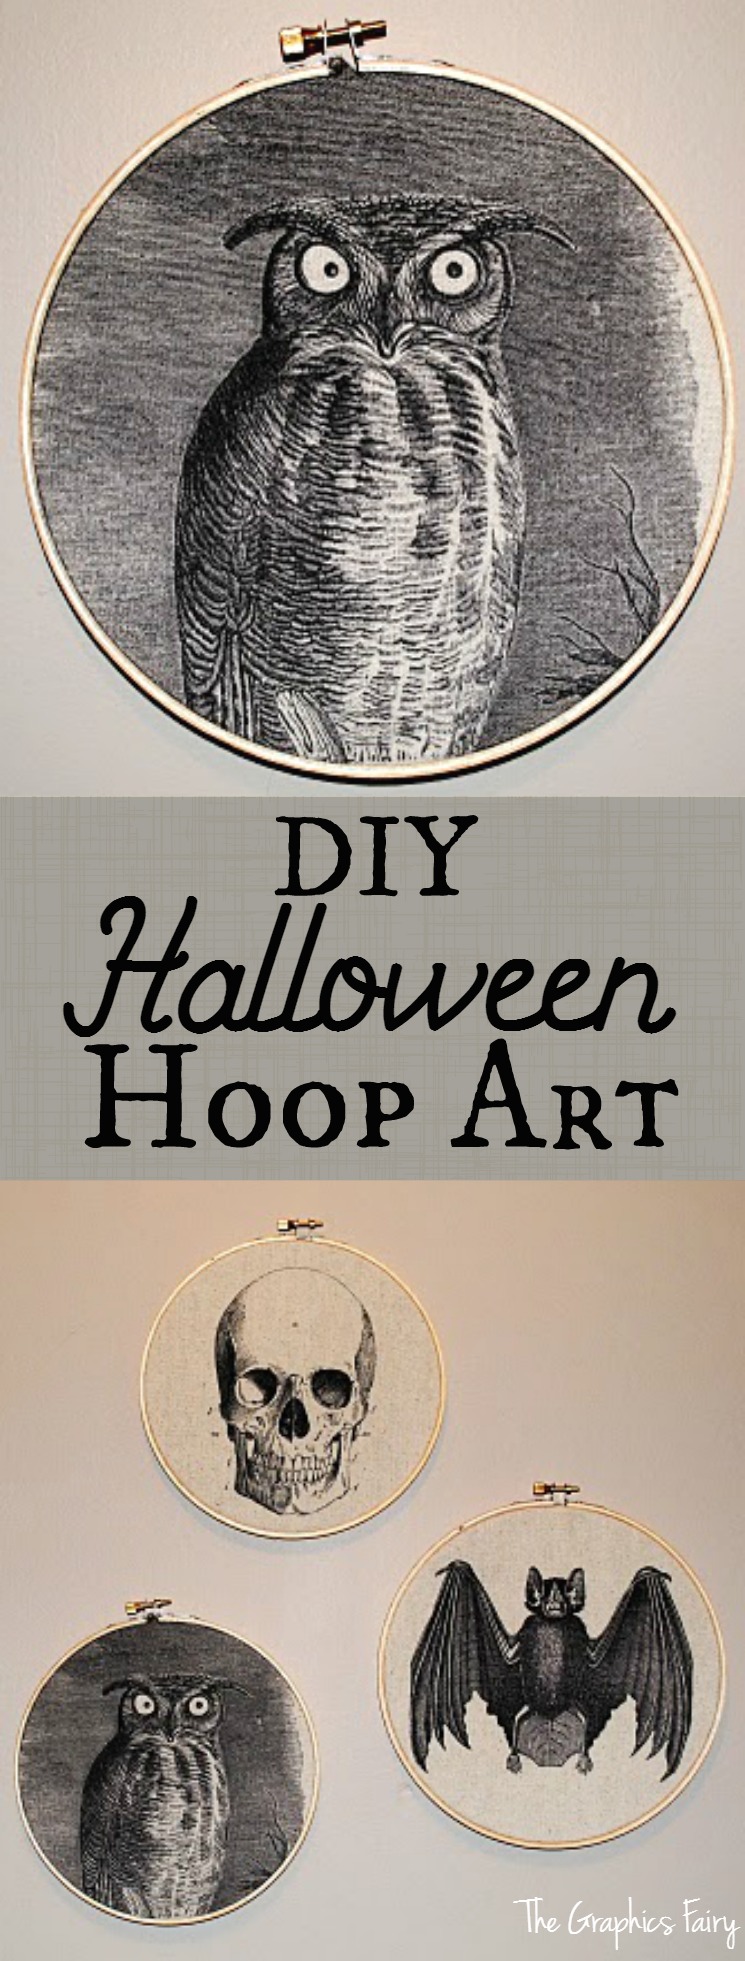 DIY Halloween Hoop Art The Graphics Fairy